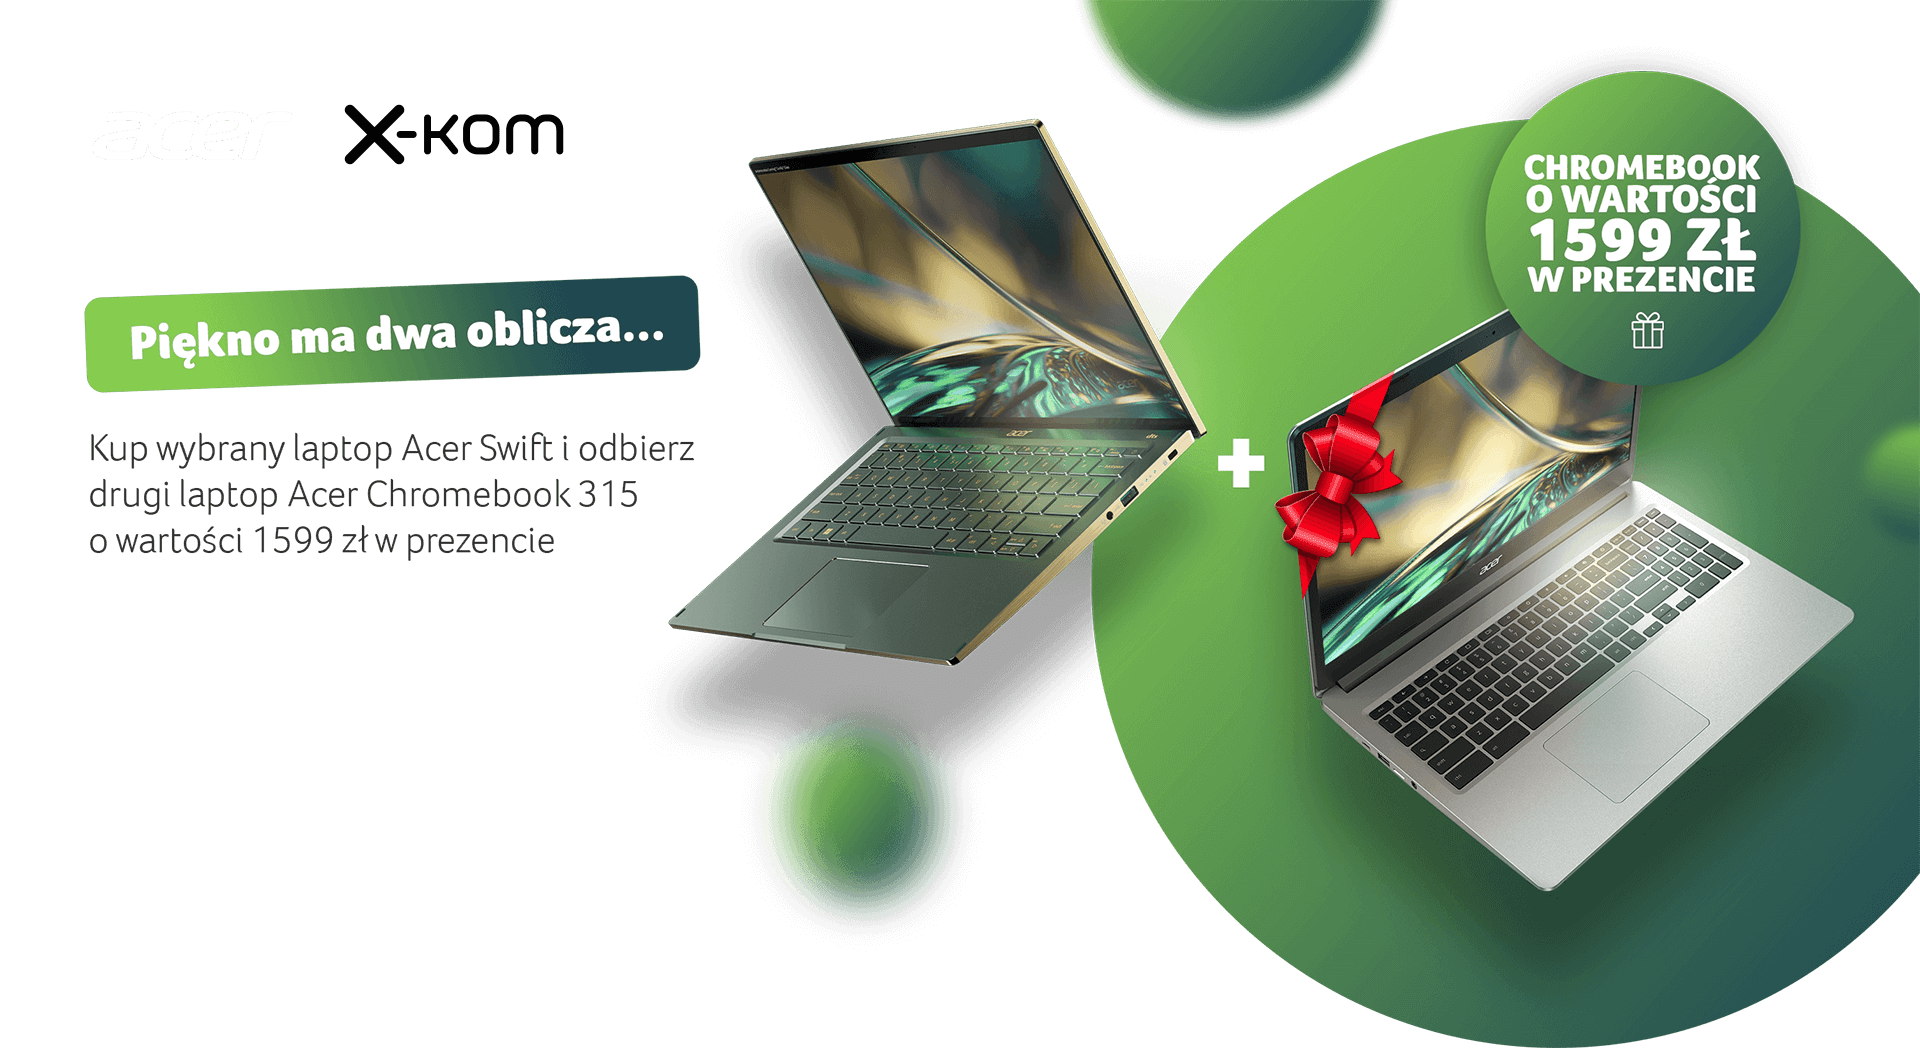 Piękny i Bestia - Kup wybrany laptop Acer Swift i odbierz drugi laptop Acer Chromebook 315 o wartości 1599zł w prezencie